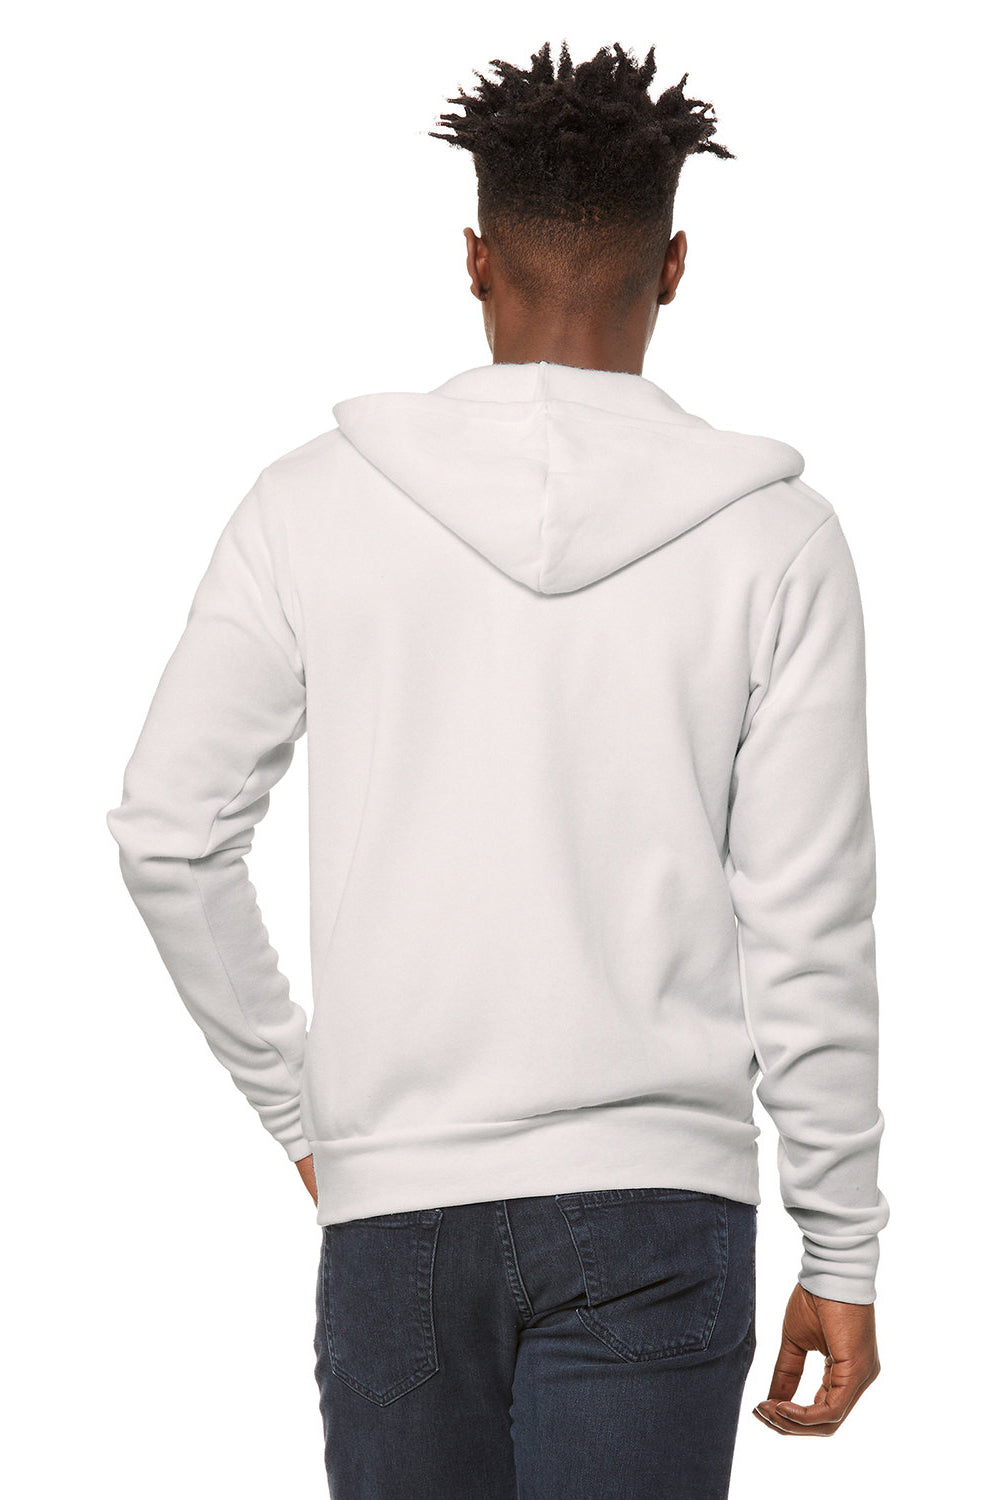 Bella + Canvas BC3739/3739 Mens Fleece Full Zip Hooded Sweatshirt Hoodie Vintage White Model Back